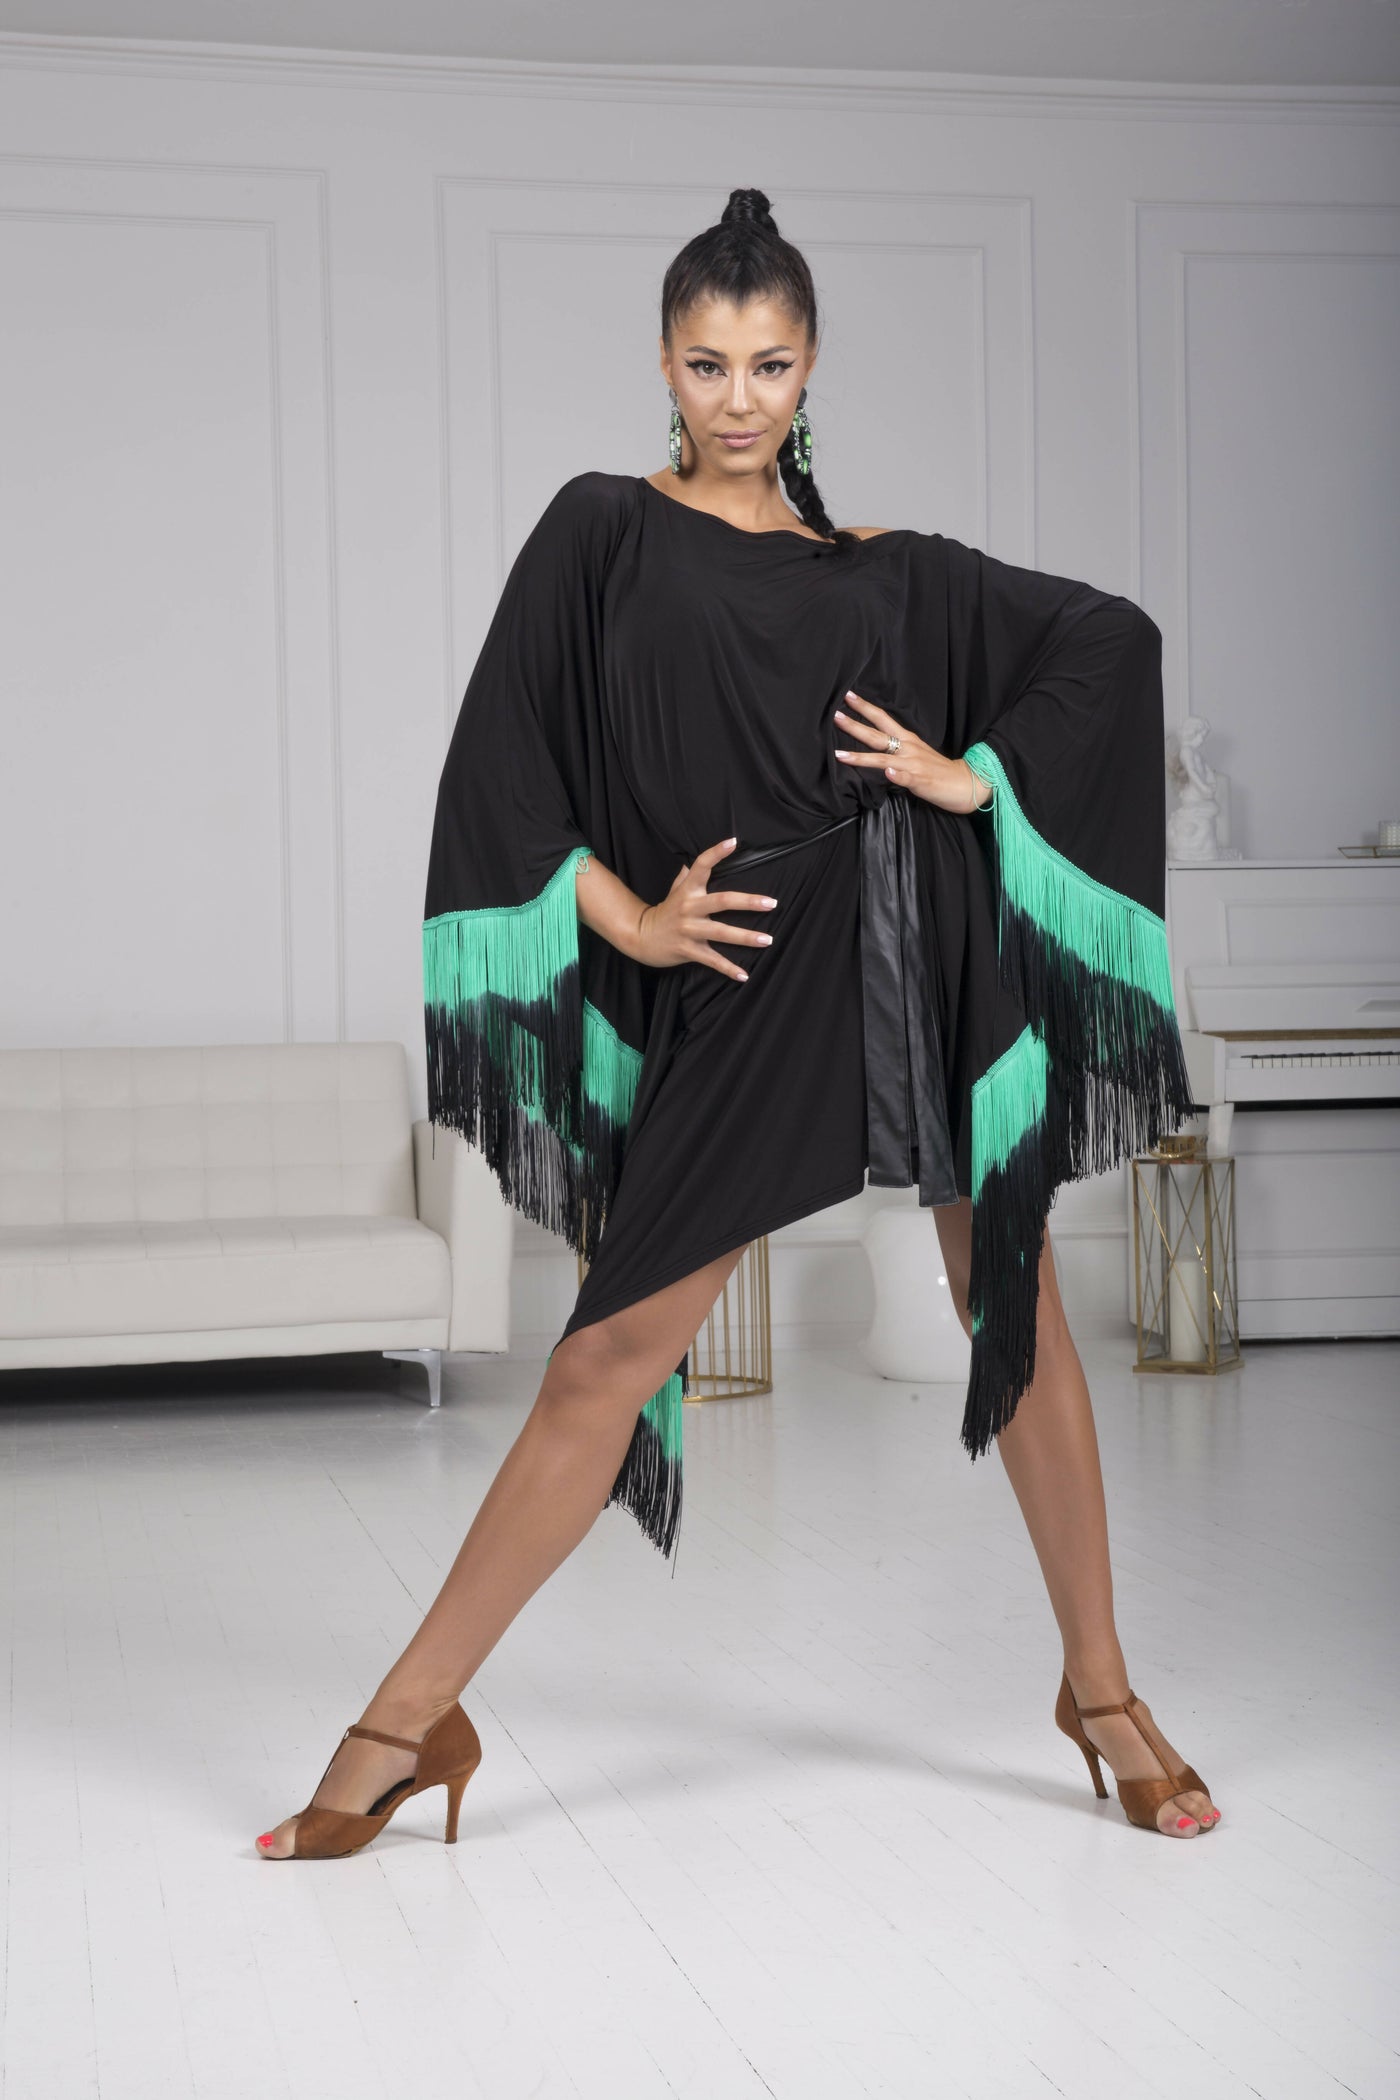 Tunic Ombra by Senga Dancewear